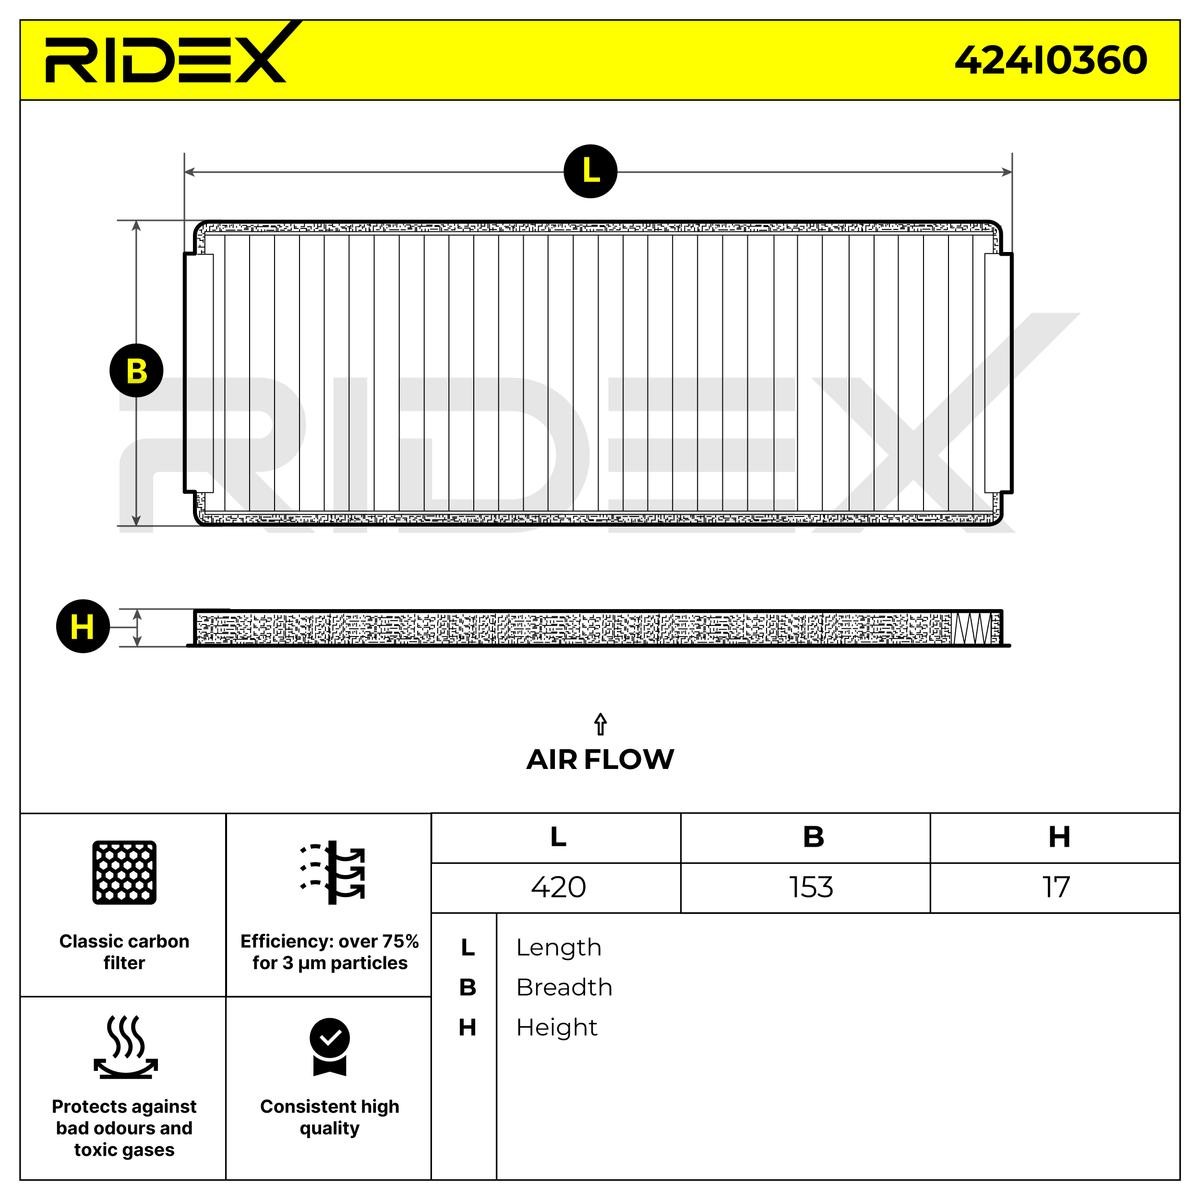 RIDEX Filtro antipolline 424I0360 recensioni